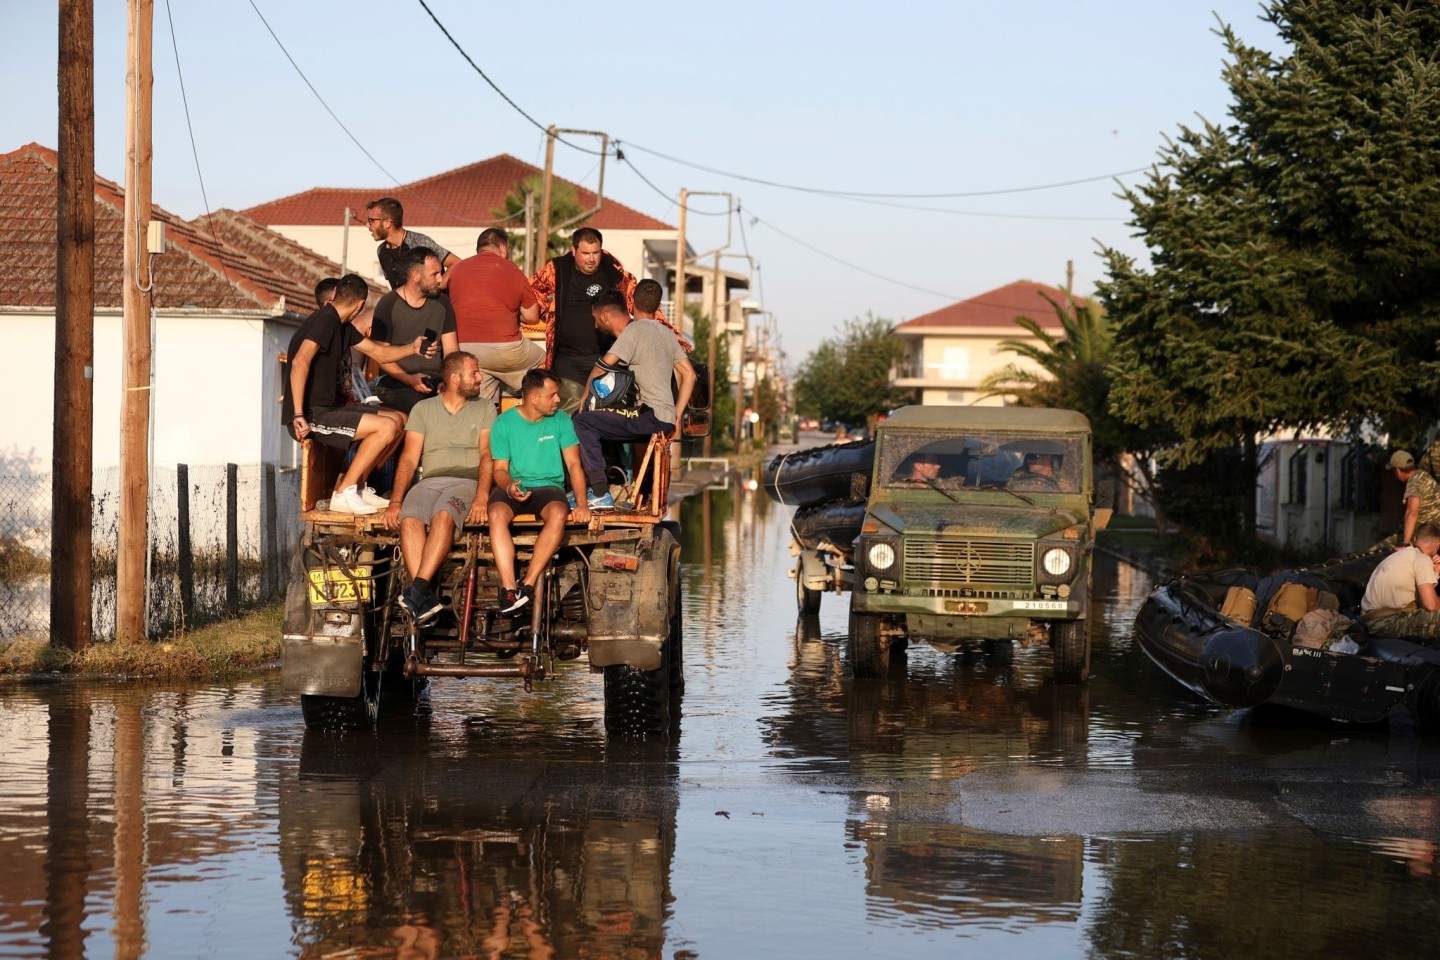 Überflutete Straßen im griechischen Palamas. In den meisten betroffenen Regionen ist die Stromversorgung wieder hergestellt worden. Probleme gibt es jedoch mit der Wasserversorgung.